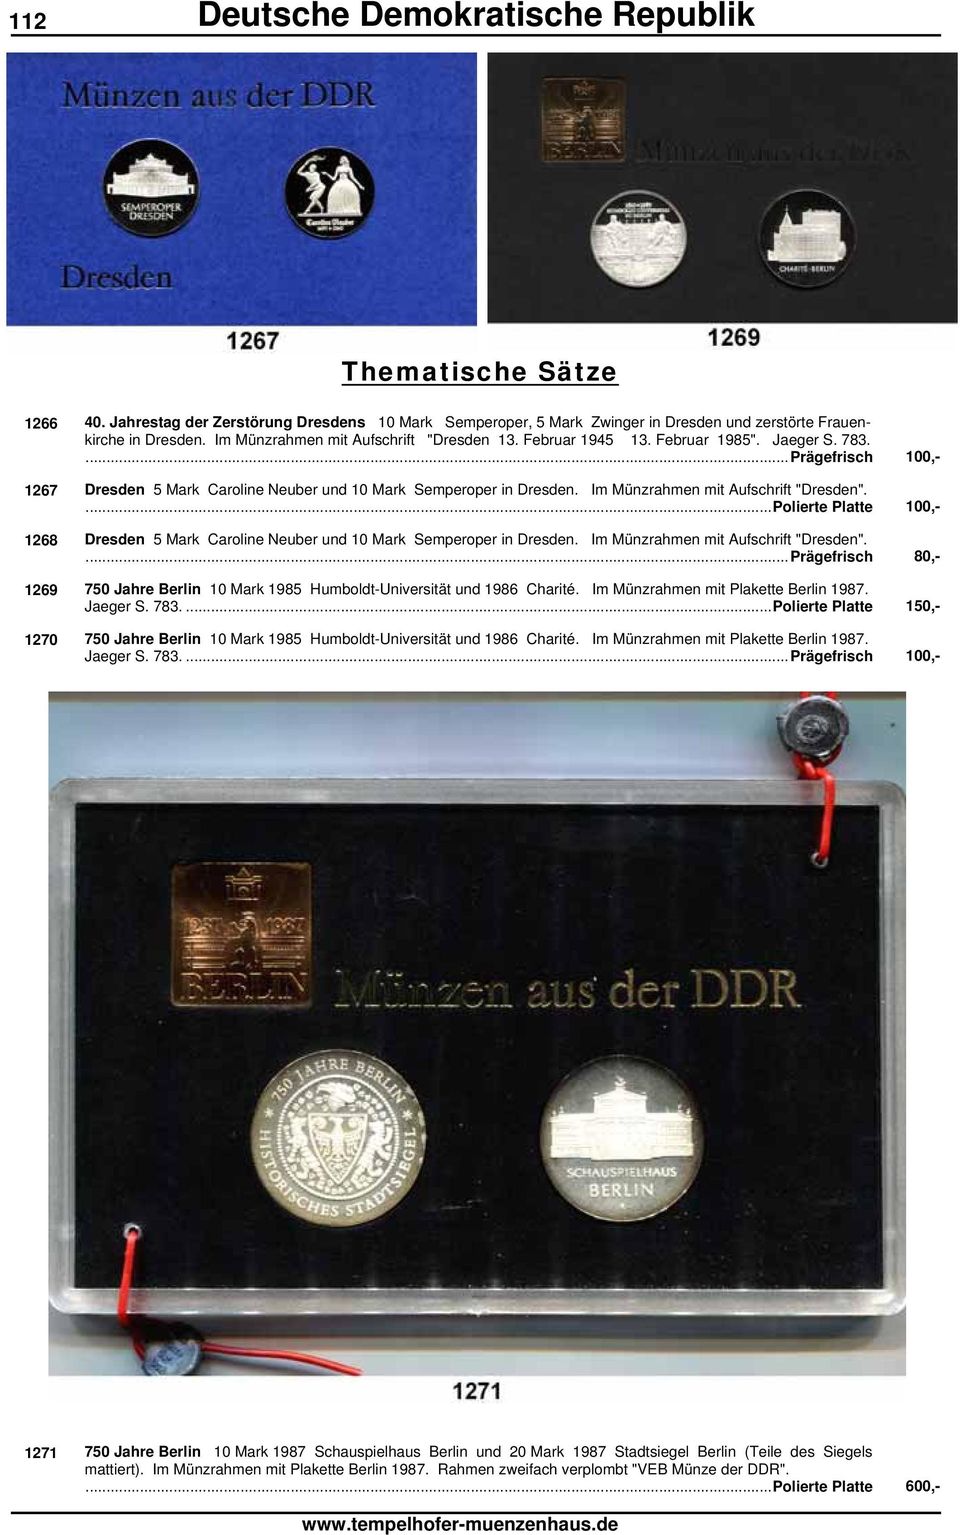 ...Polierte Platte 100,- 1268 Dresden 5 Mark Caroline Neuber und 10 Mark Semperoper in Dresden. Im Münzrahmen mit Aufschrift "Dresden".